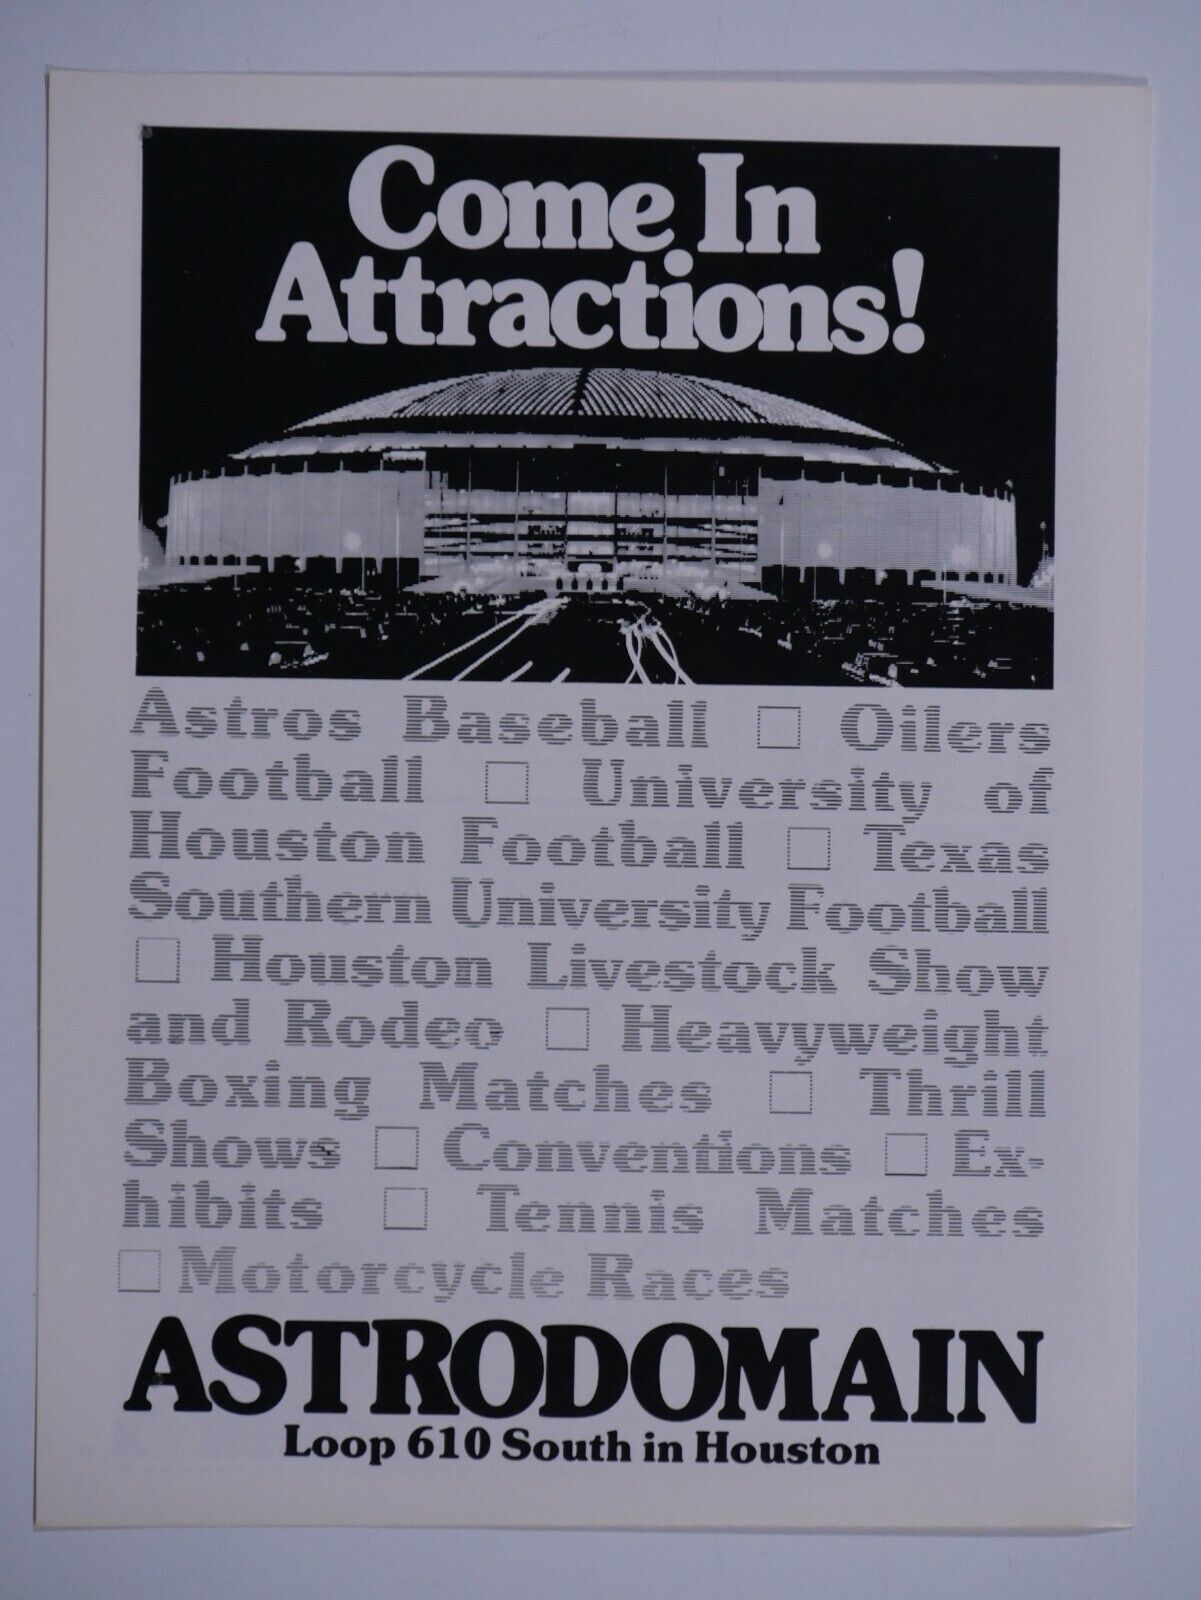 Houston Astrodome Astrodomain Vintage 1977 Come In Attractions Original Print Ad